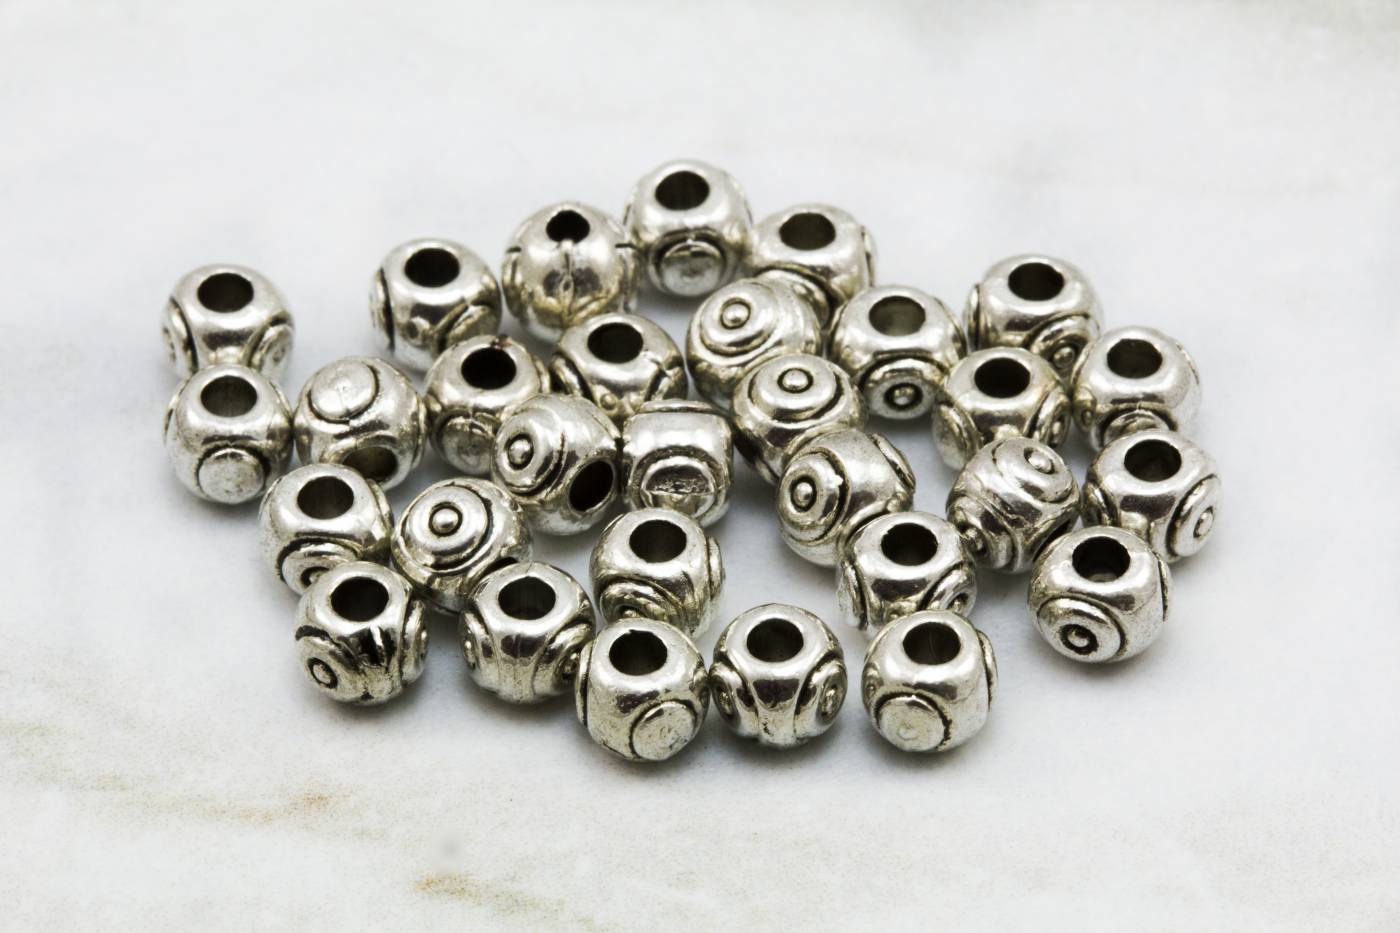 5mm-metal-jewelry-spacer-bead-findings